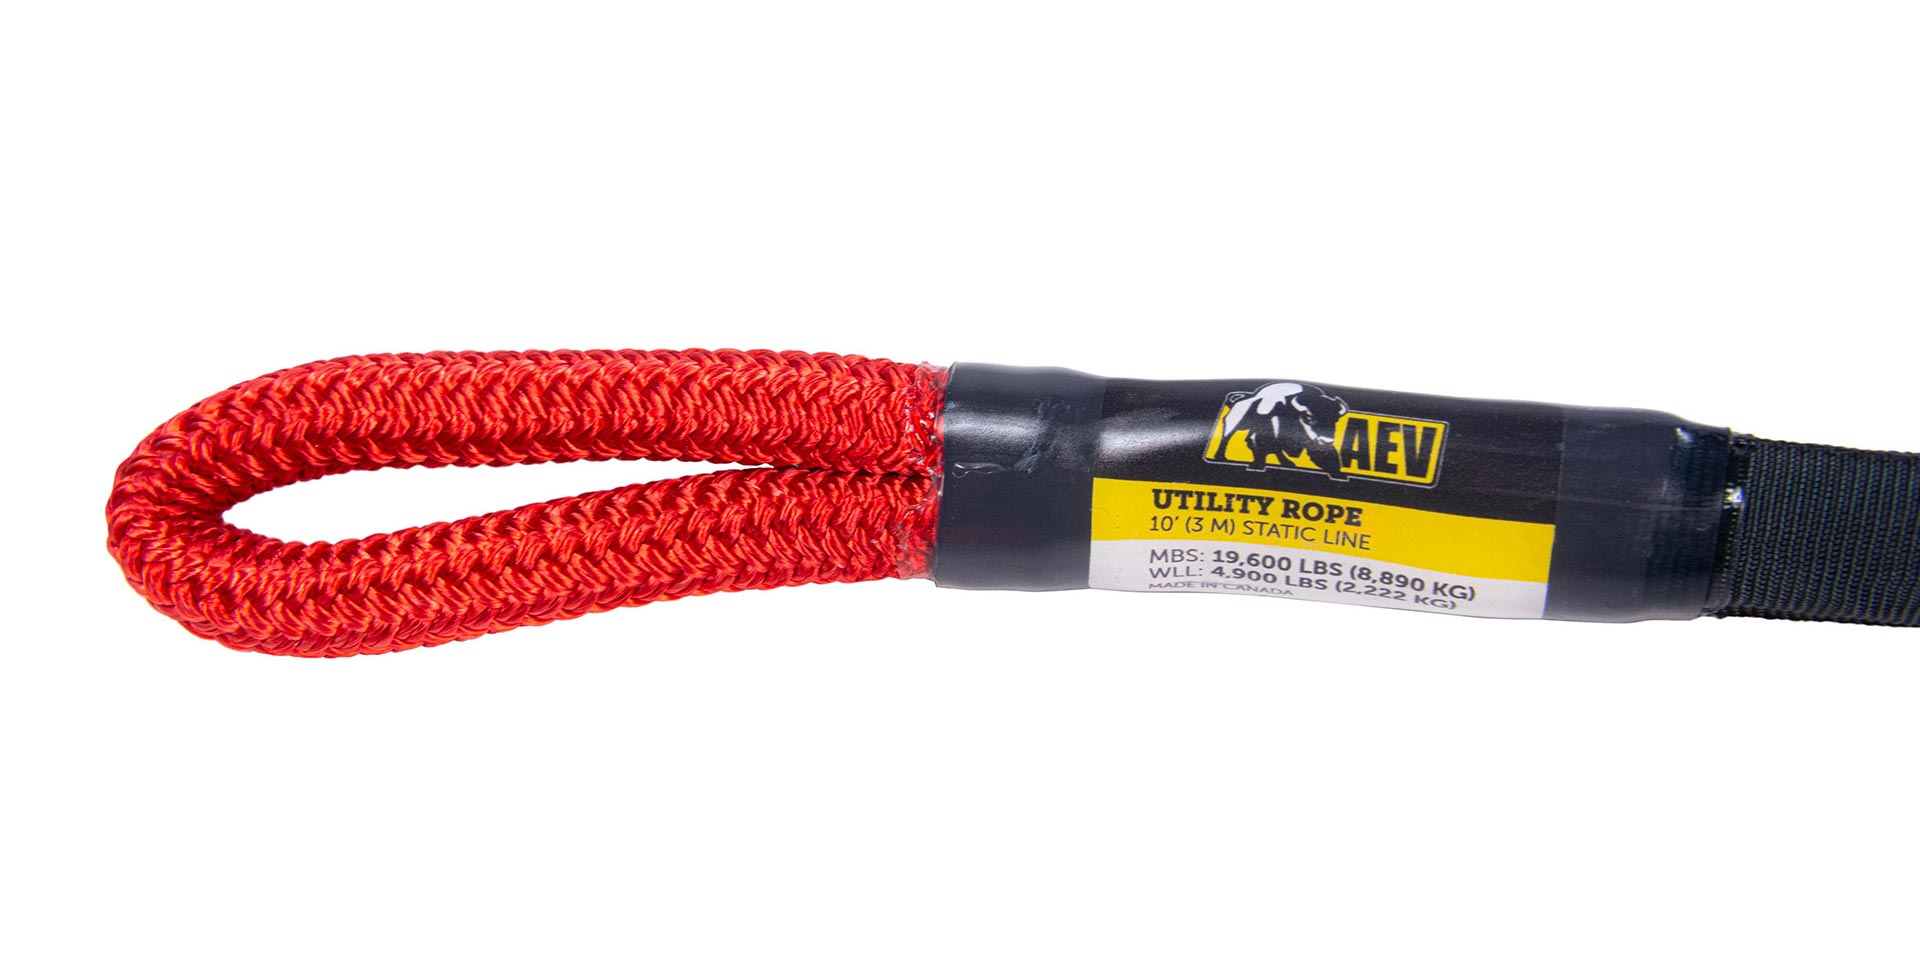 AEV Utility Rope